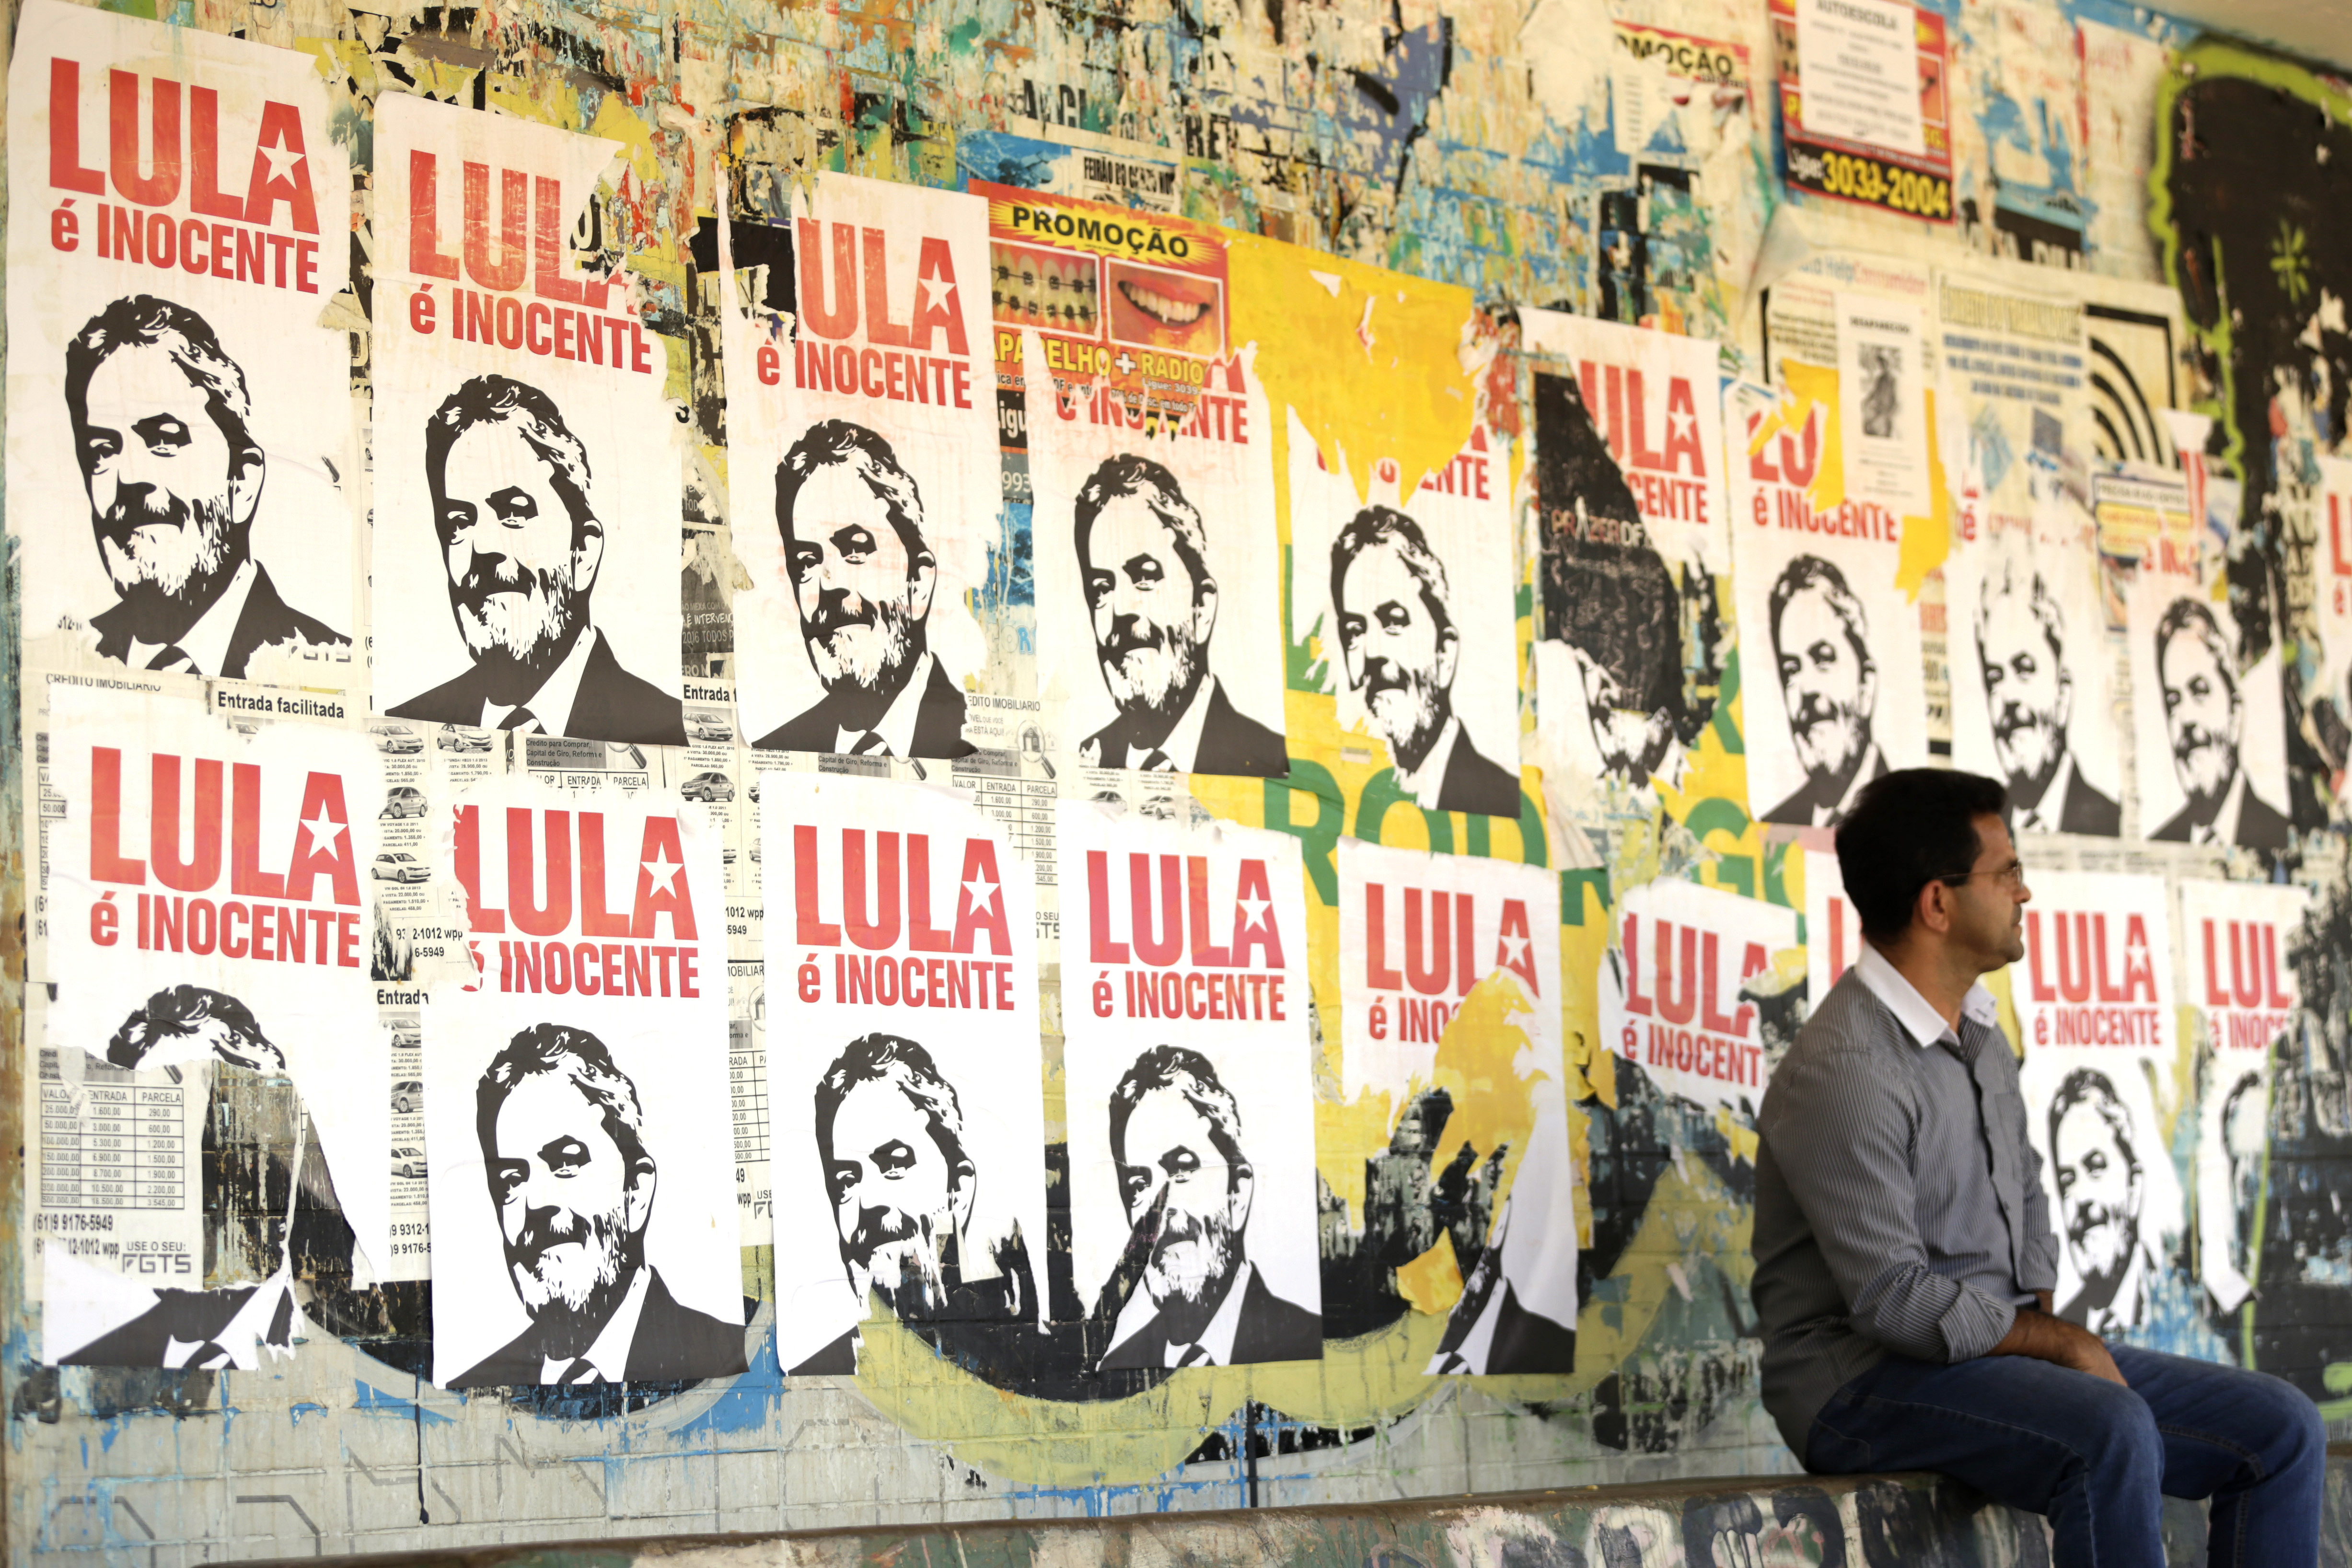 Este jueves se cumplen 90 días de prisión contra Lula por el cargo no comprobado de corrupción.